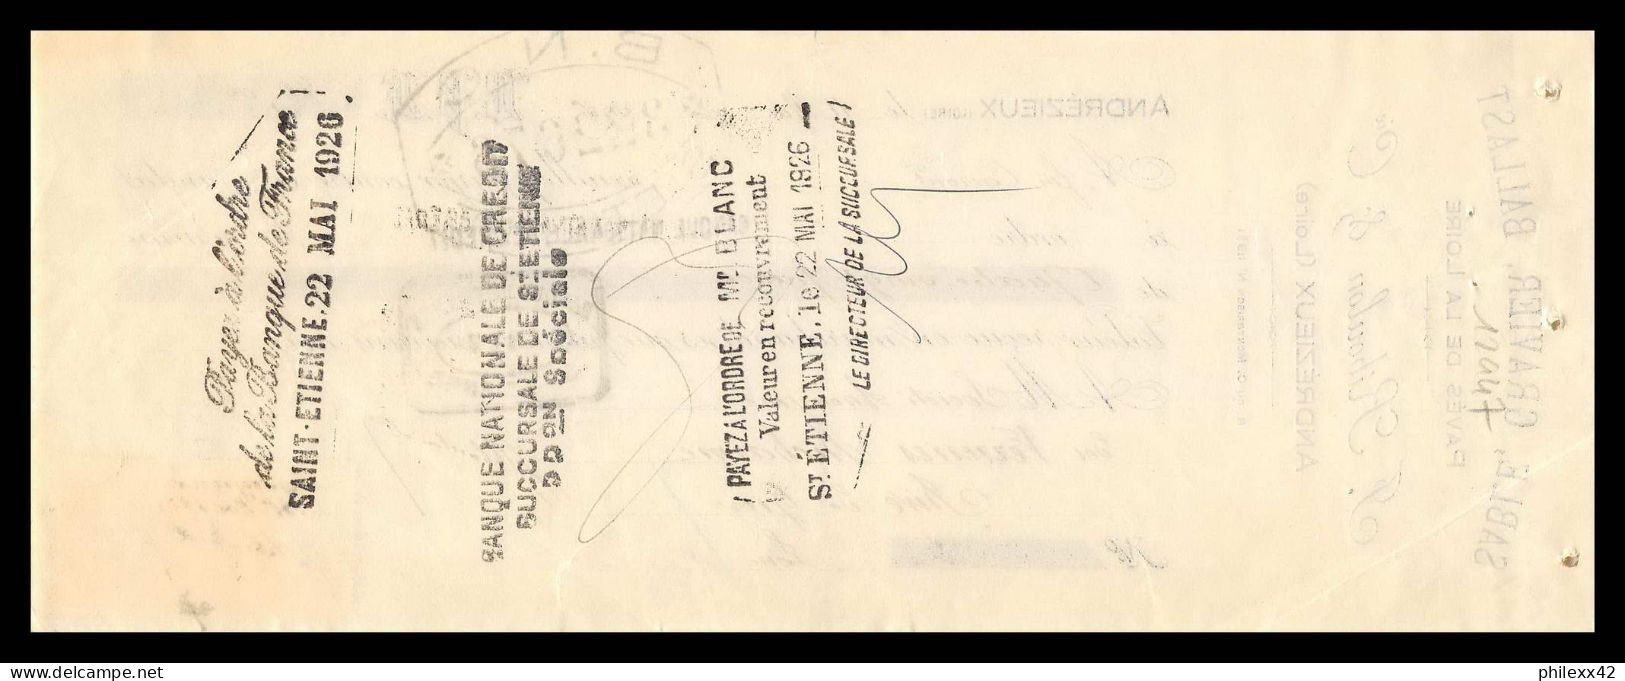 12947 Ballast Andrezieux 1926 Verreries Richarme Rive De Gier Loire 15c Affiches Timbre Fiscal Fiscaux Sur Document  - Covers & Documents